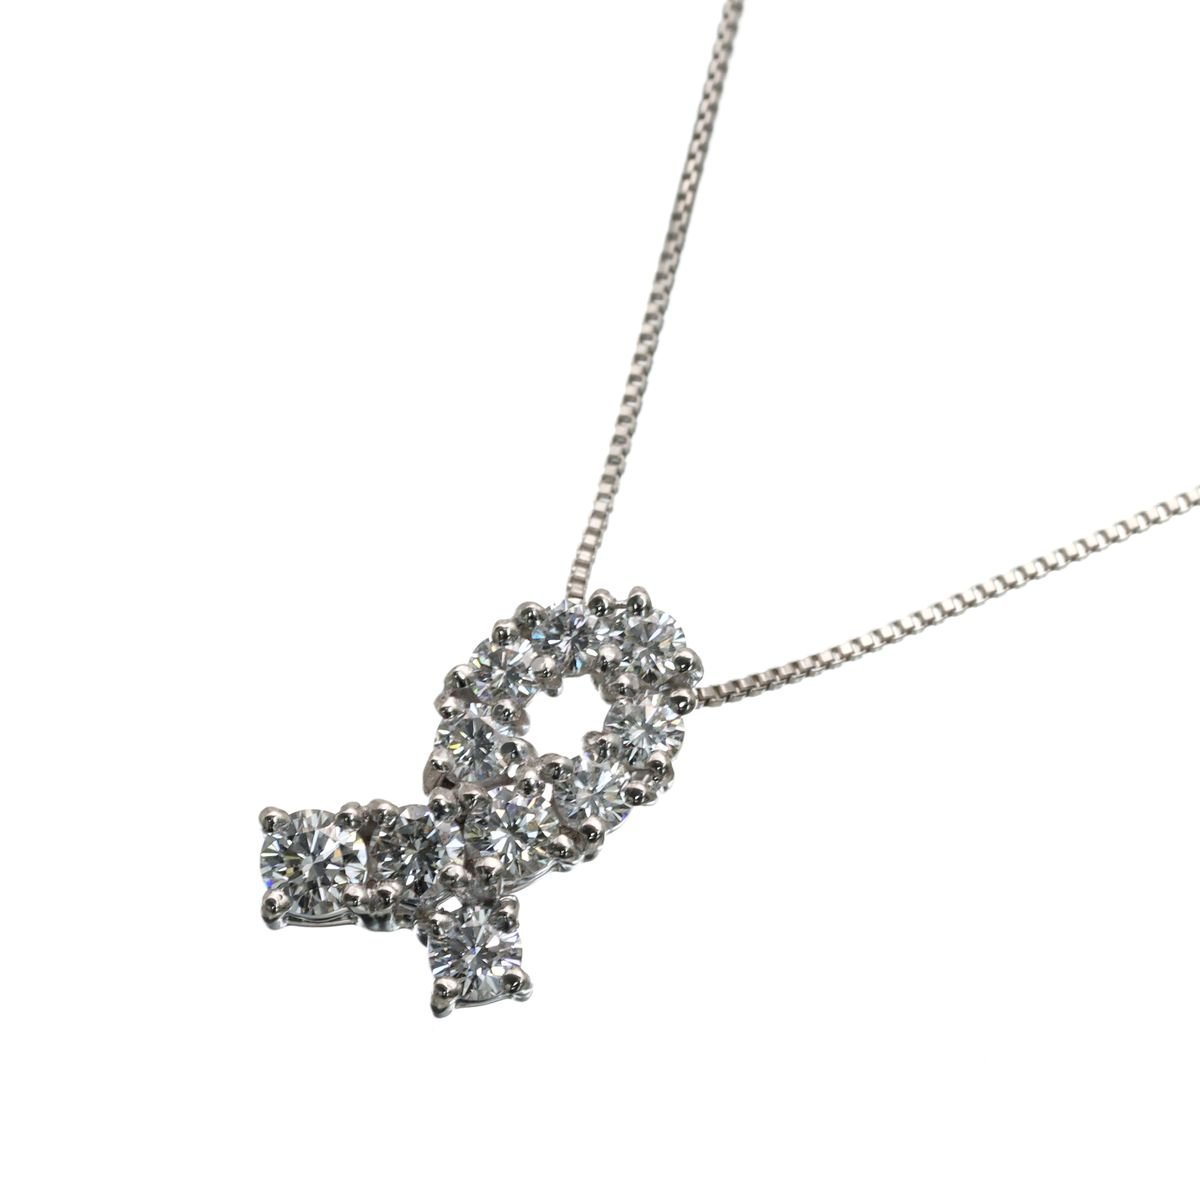 力強い煌めきで美しい TASAKI 田崎真珠 Pt850/900 ダイヤモンド